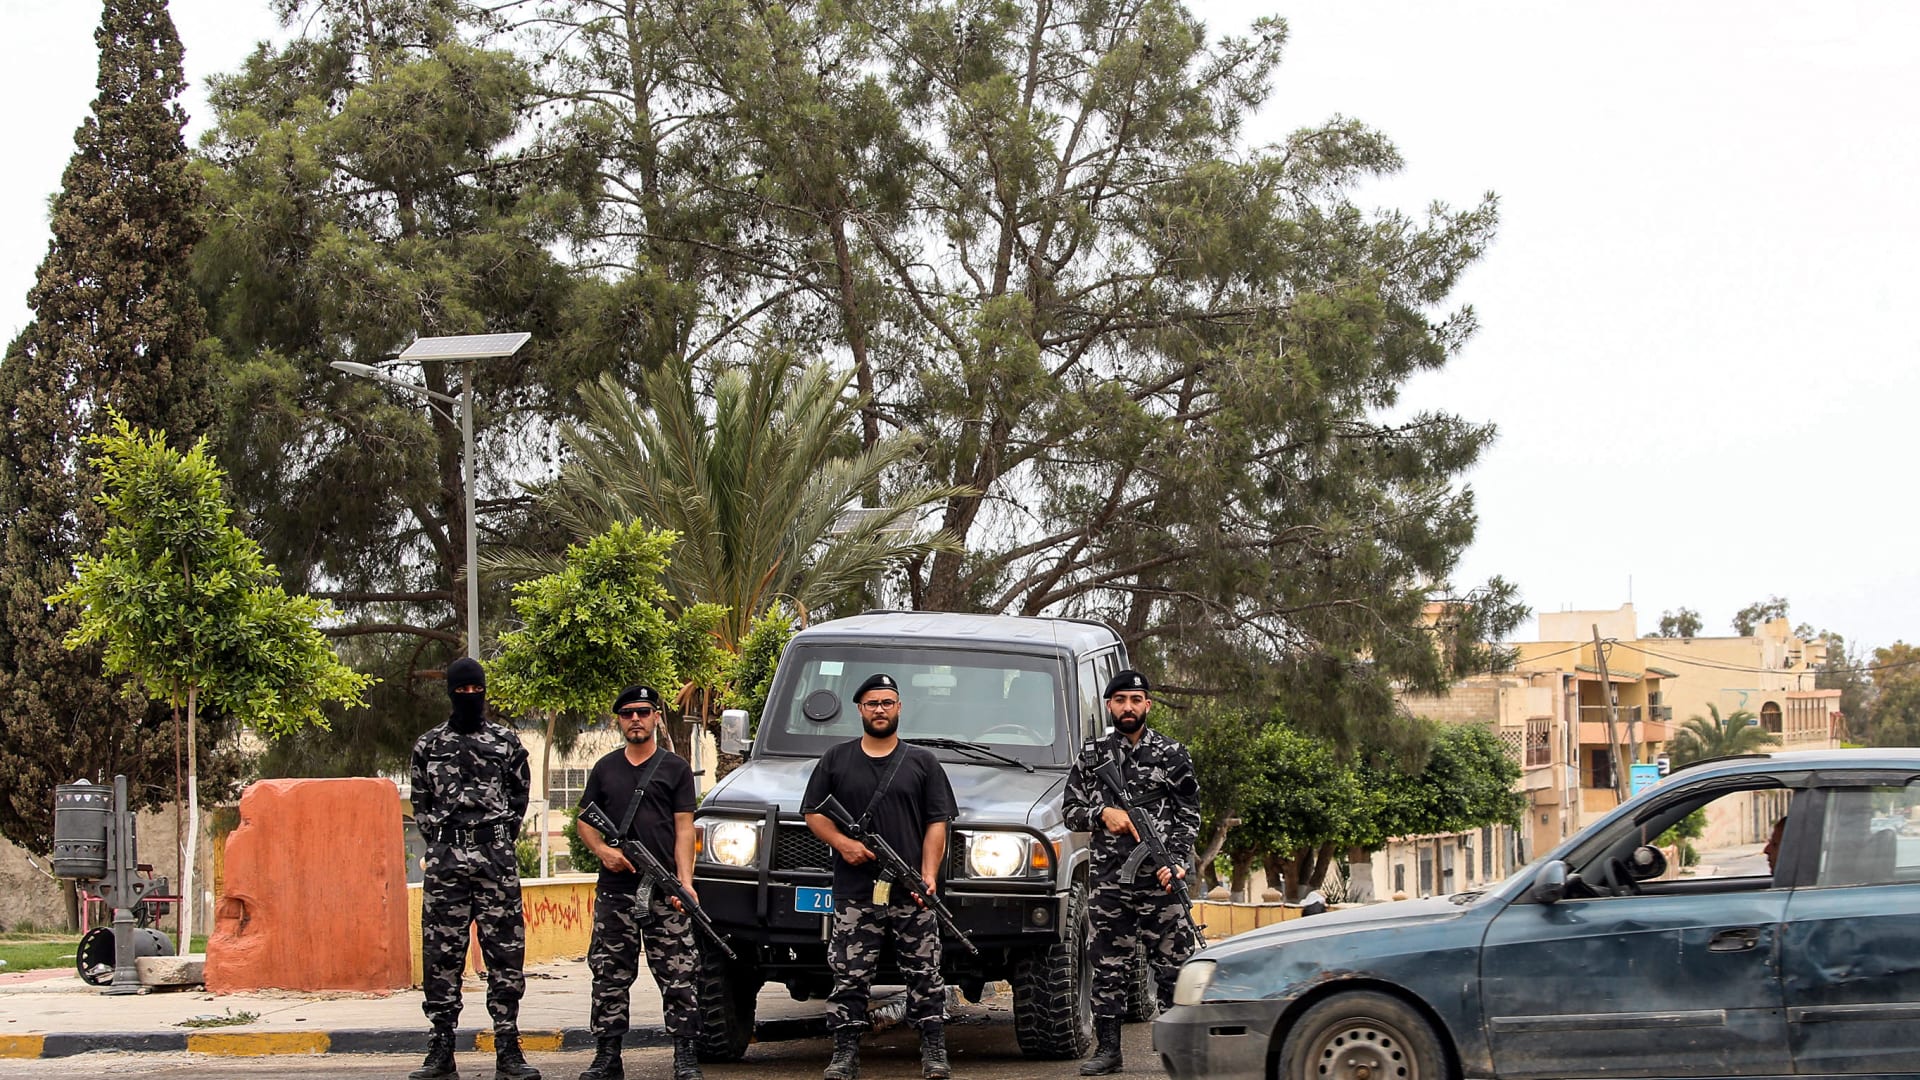 بسبب "مقطع التعذيب".. نائب مصري يطالب بطرد سفير ليبيا وحكومة الوفاق تُحقق في الحادثة